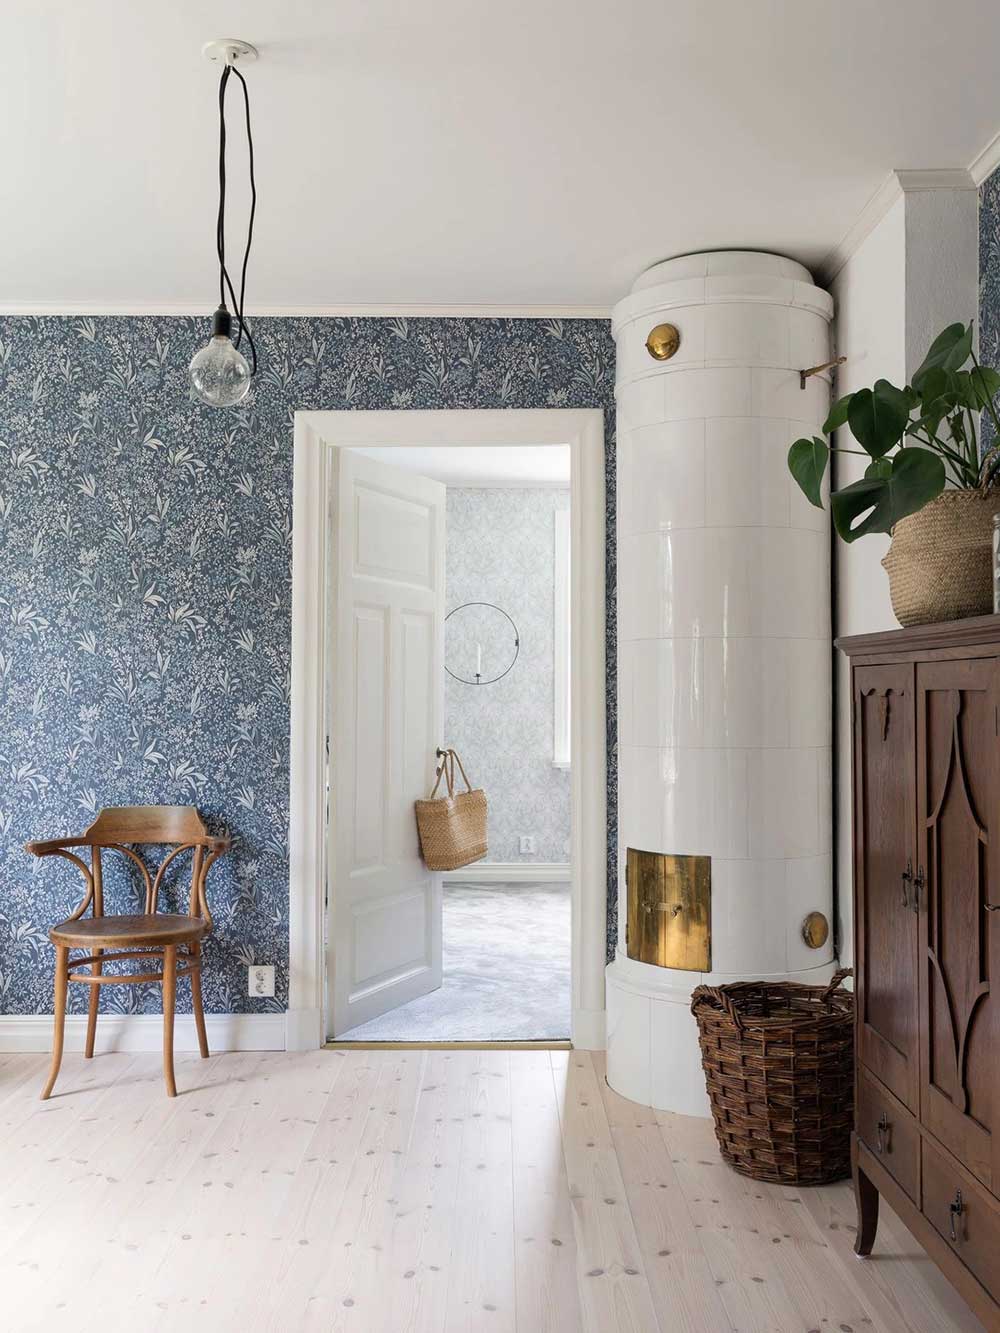 Идеальный коттедж для молодой семьи в Швеции, которая очень хотела жить за городом идеи для дома,интерьер и дизайн